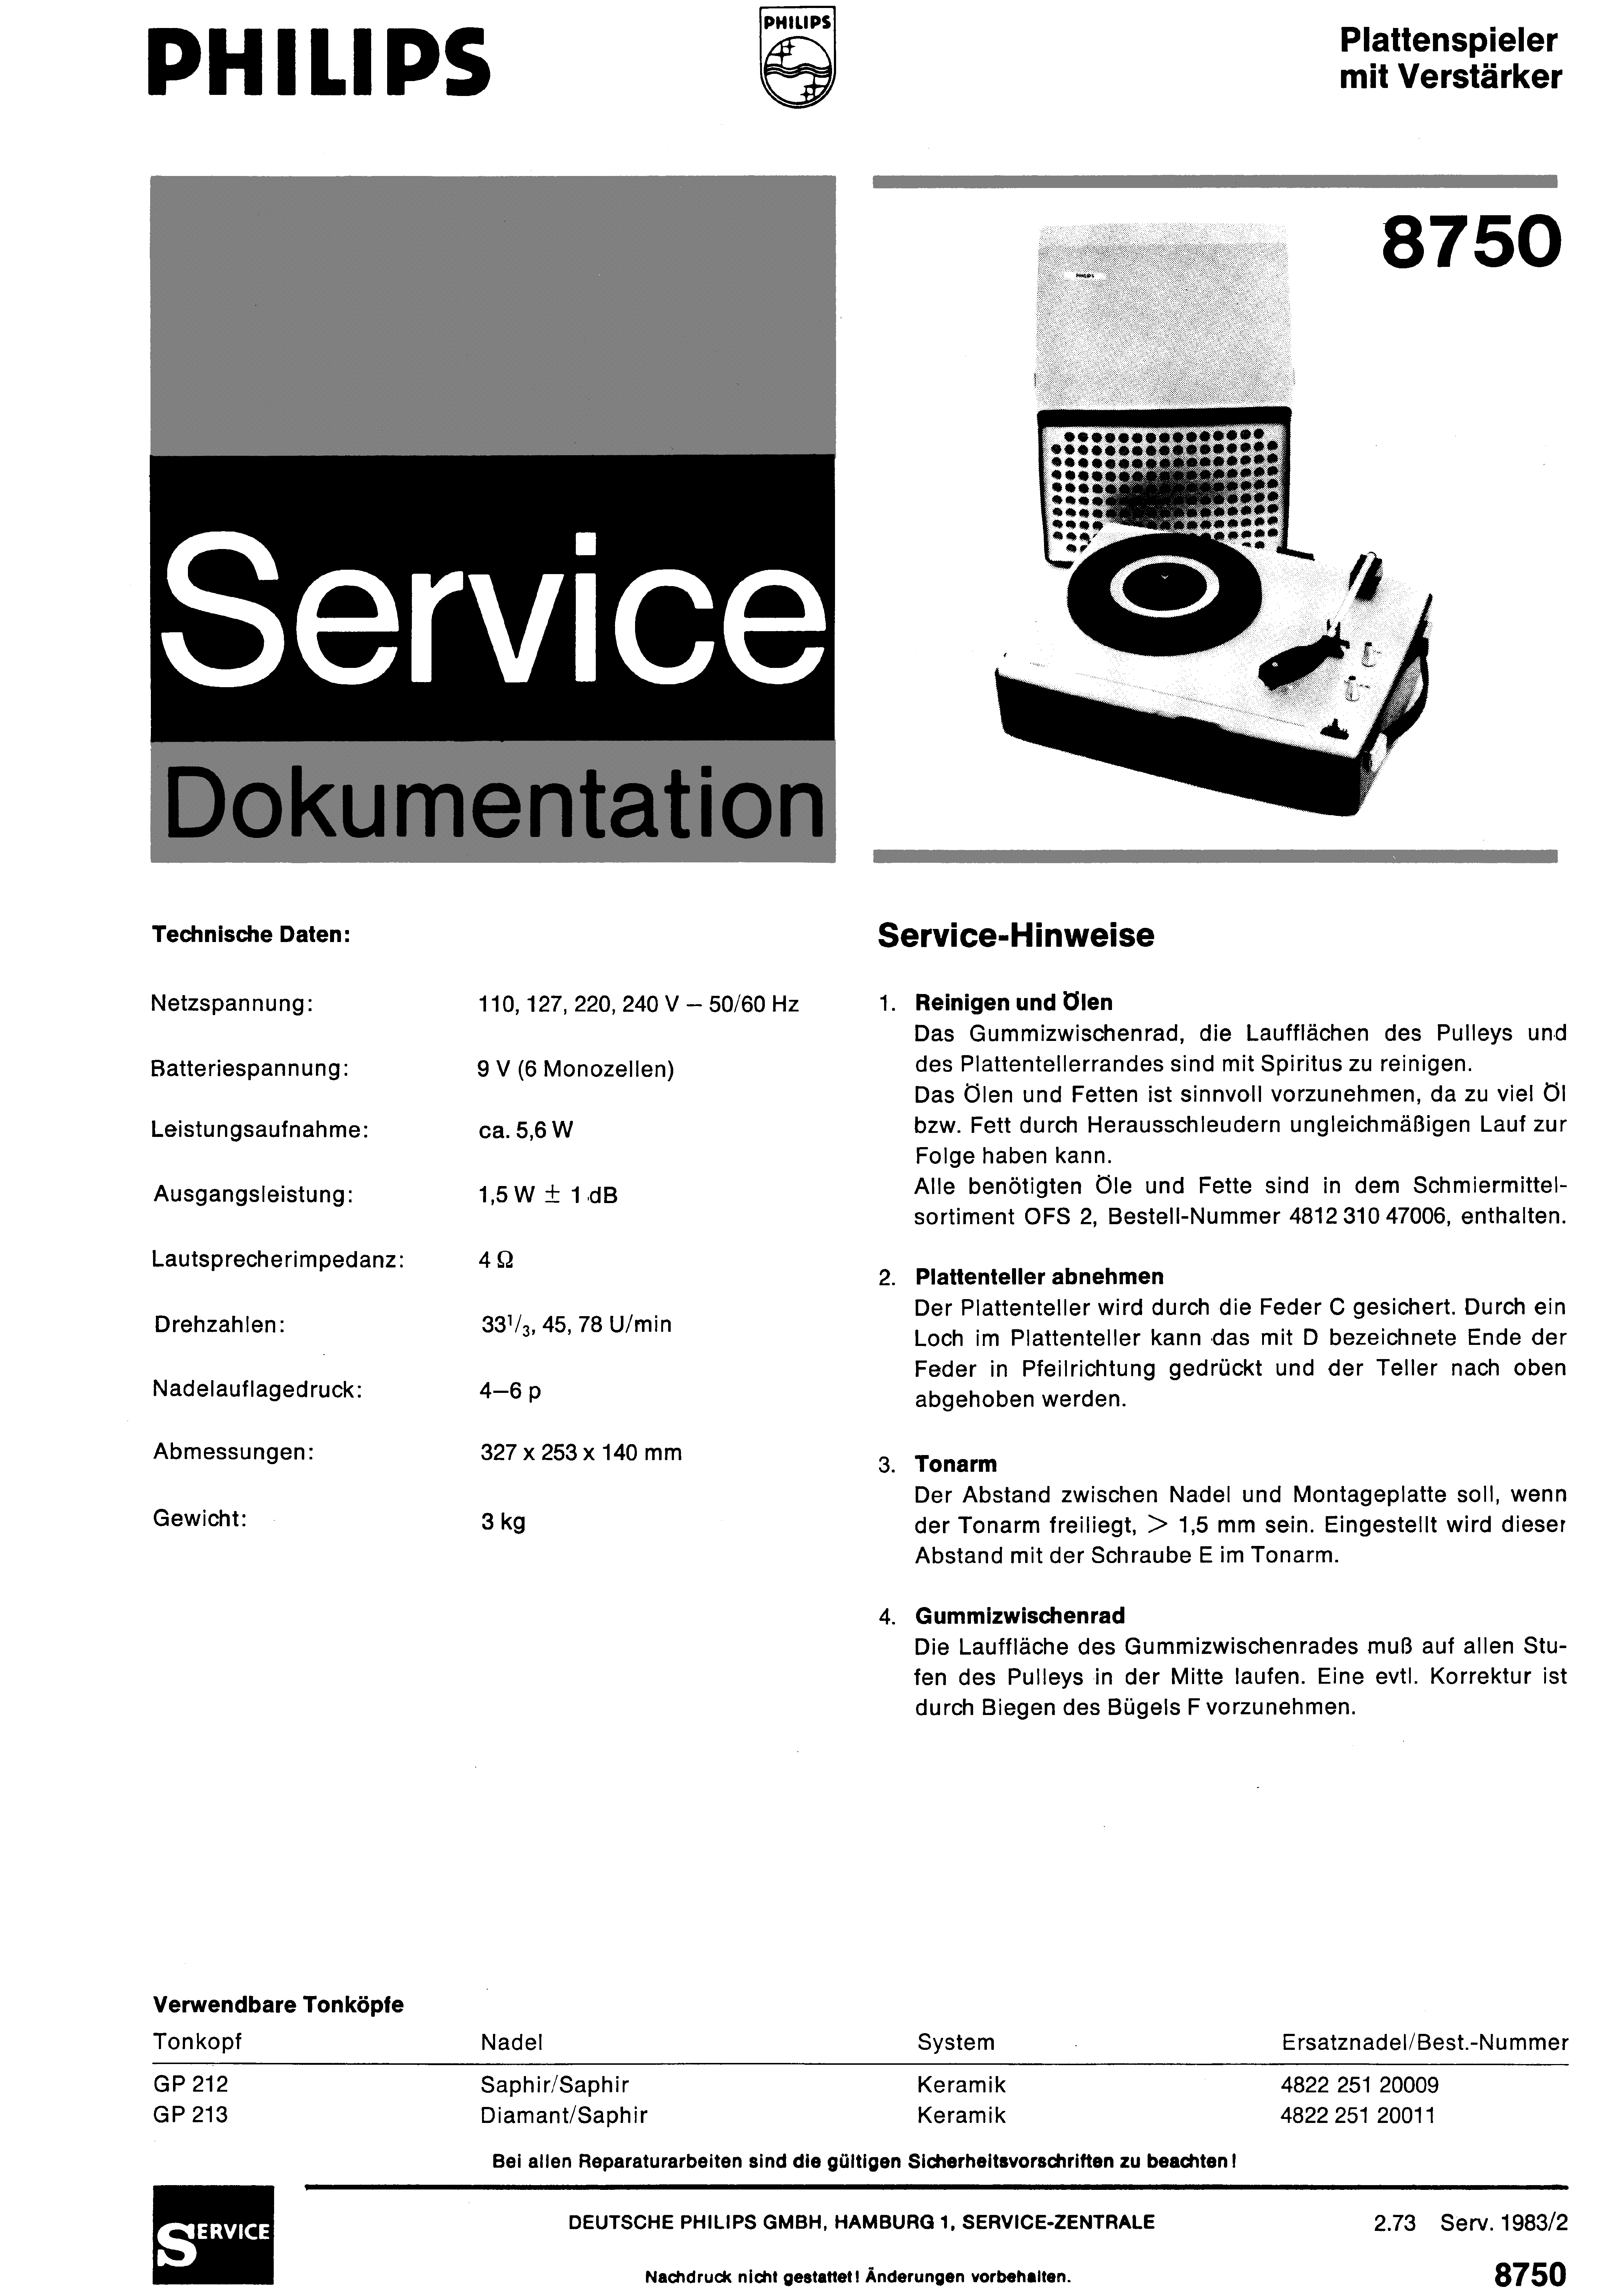 PHILIPS PLATTENSPIELER MIT VERSTAERKER 8750 SM service manual (1st page)